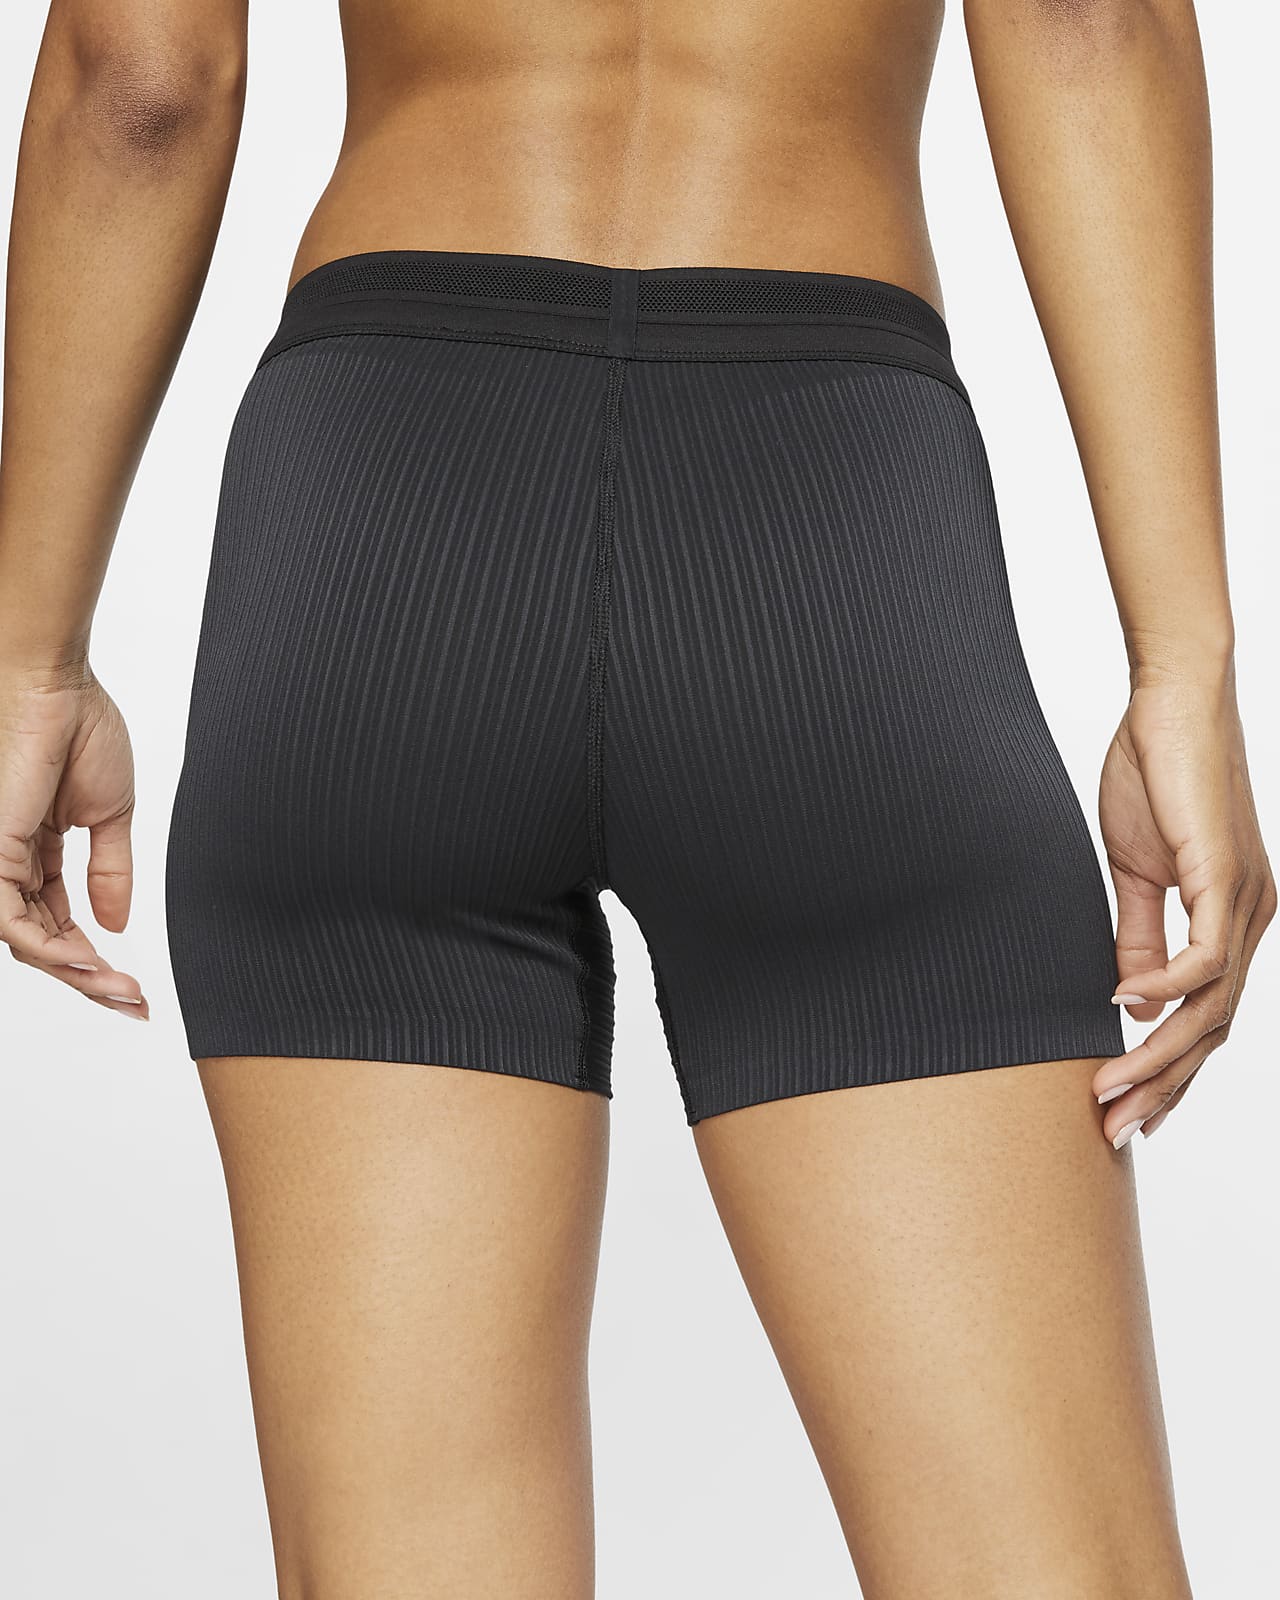 Nike Womens Basketball Aeroswift Shorts - Cool Grey/Black – SwiSh basketball